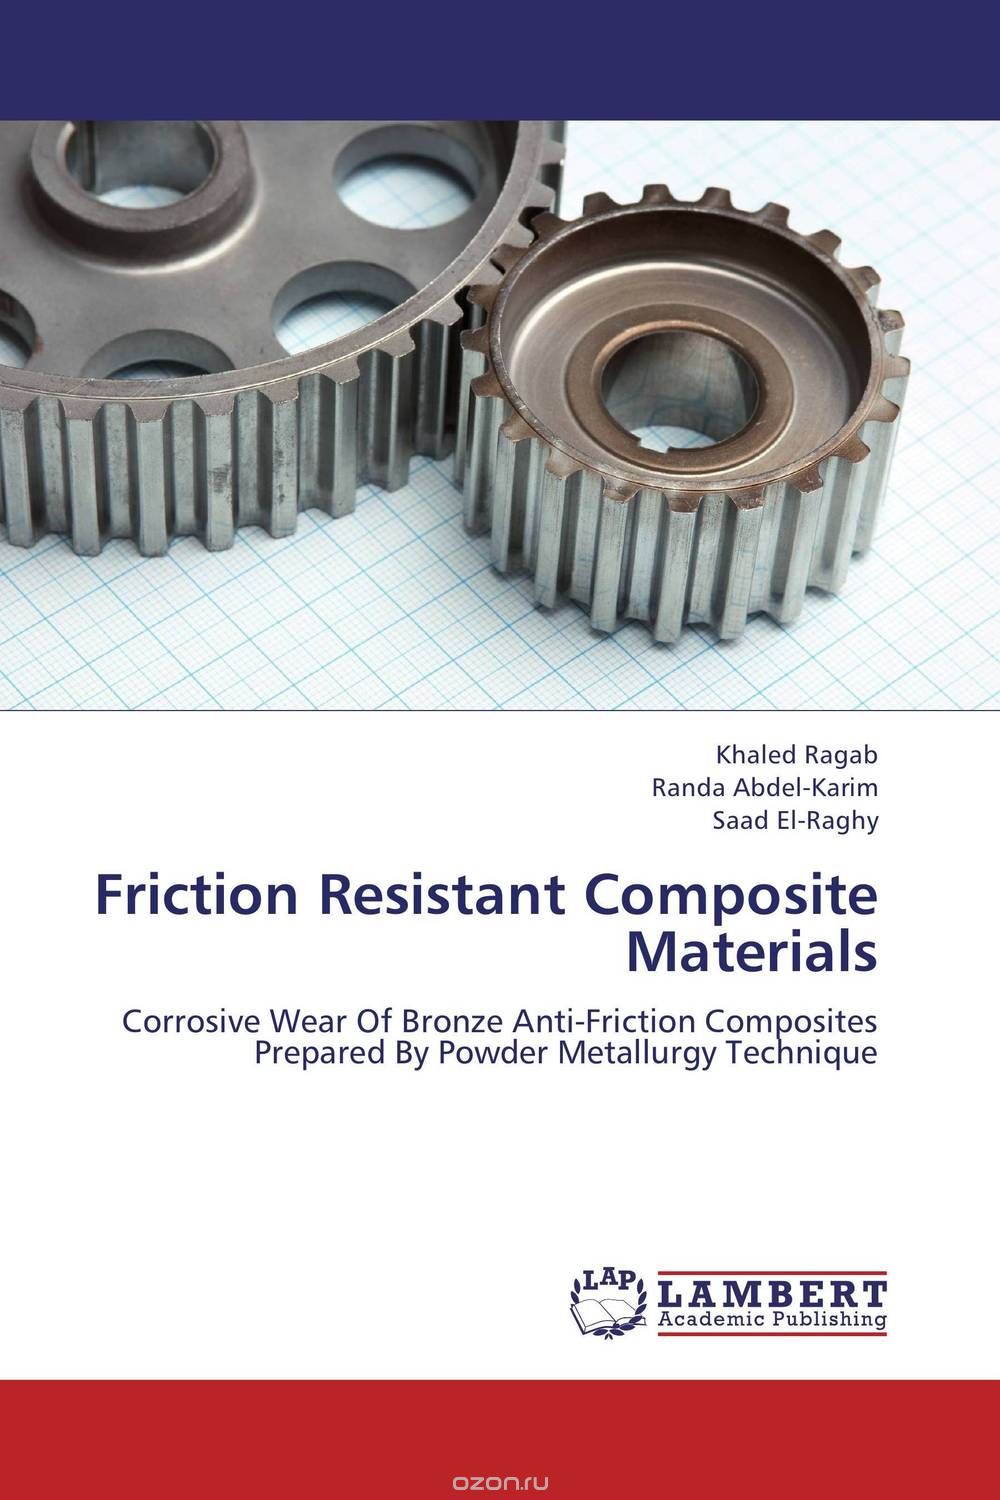 Скачать книгу "Friction Resistant Composite Materials"